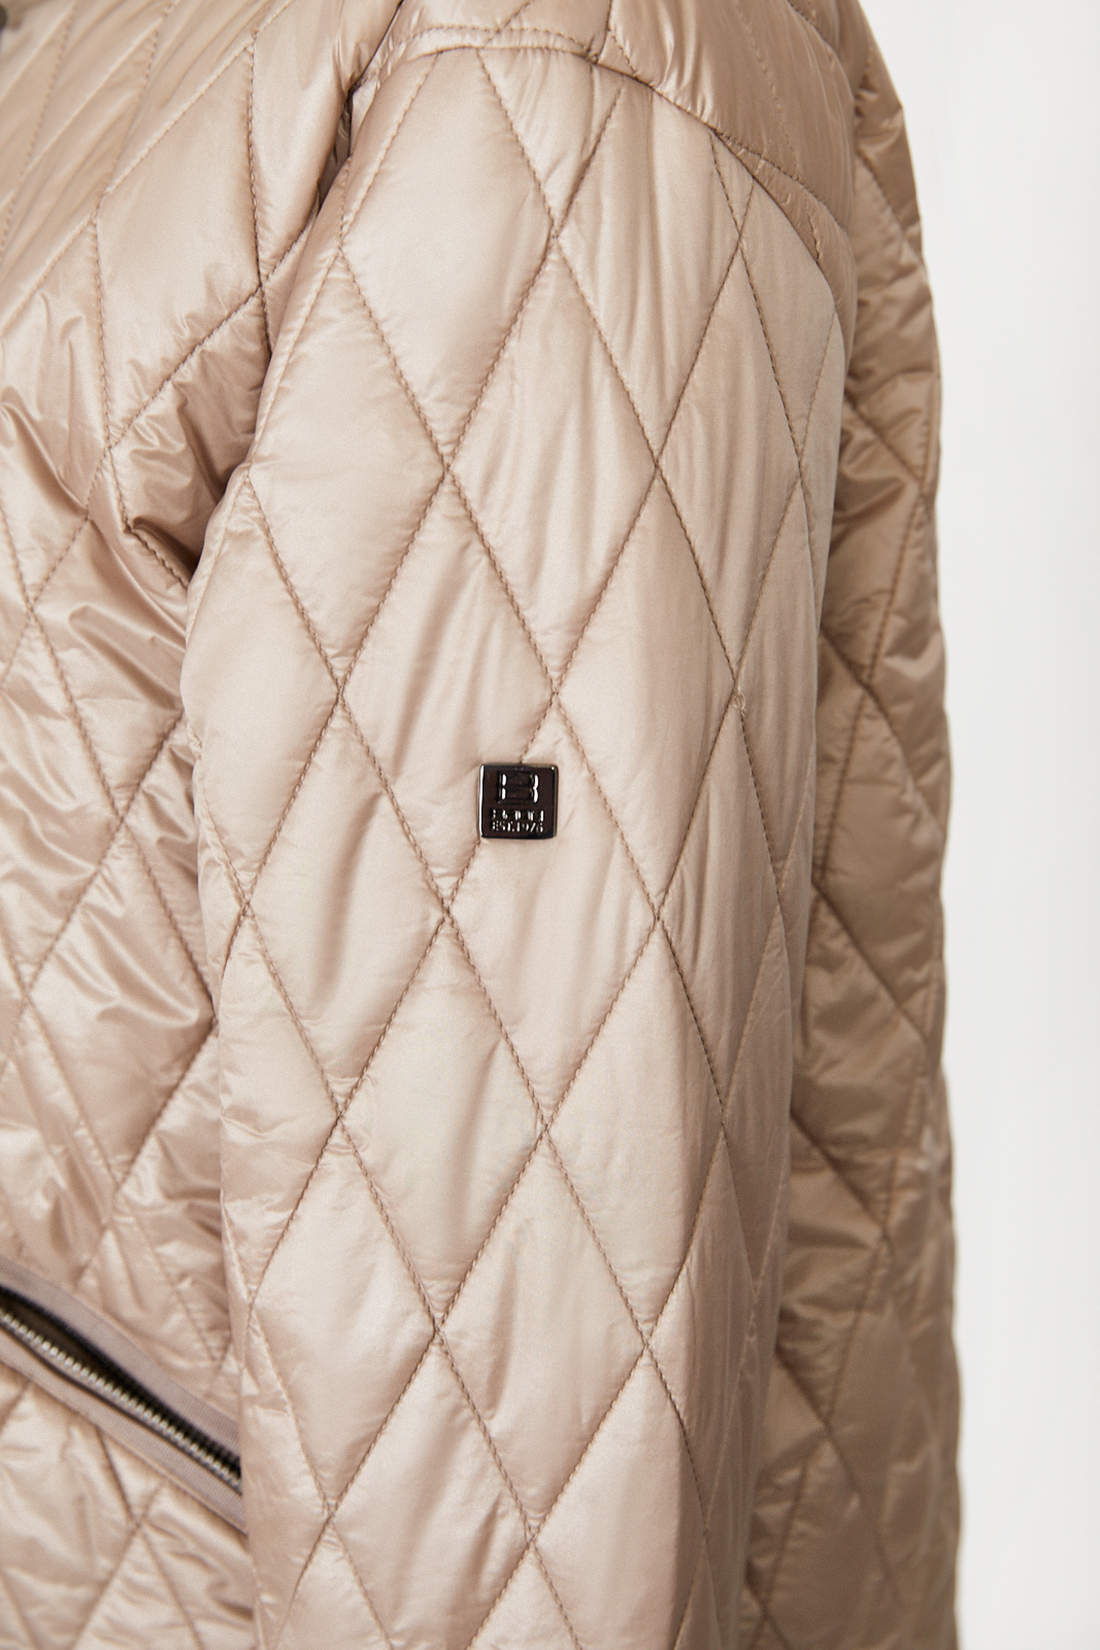 Куртка (арт. baon B031520), размер M, цвет бежевый Куртка (арт. baon B031520) - фото 5